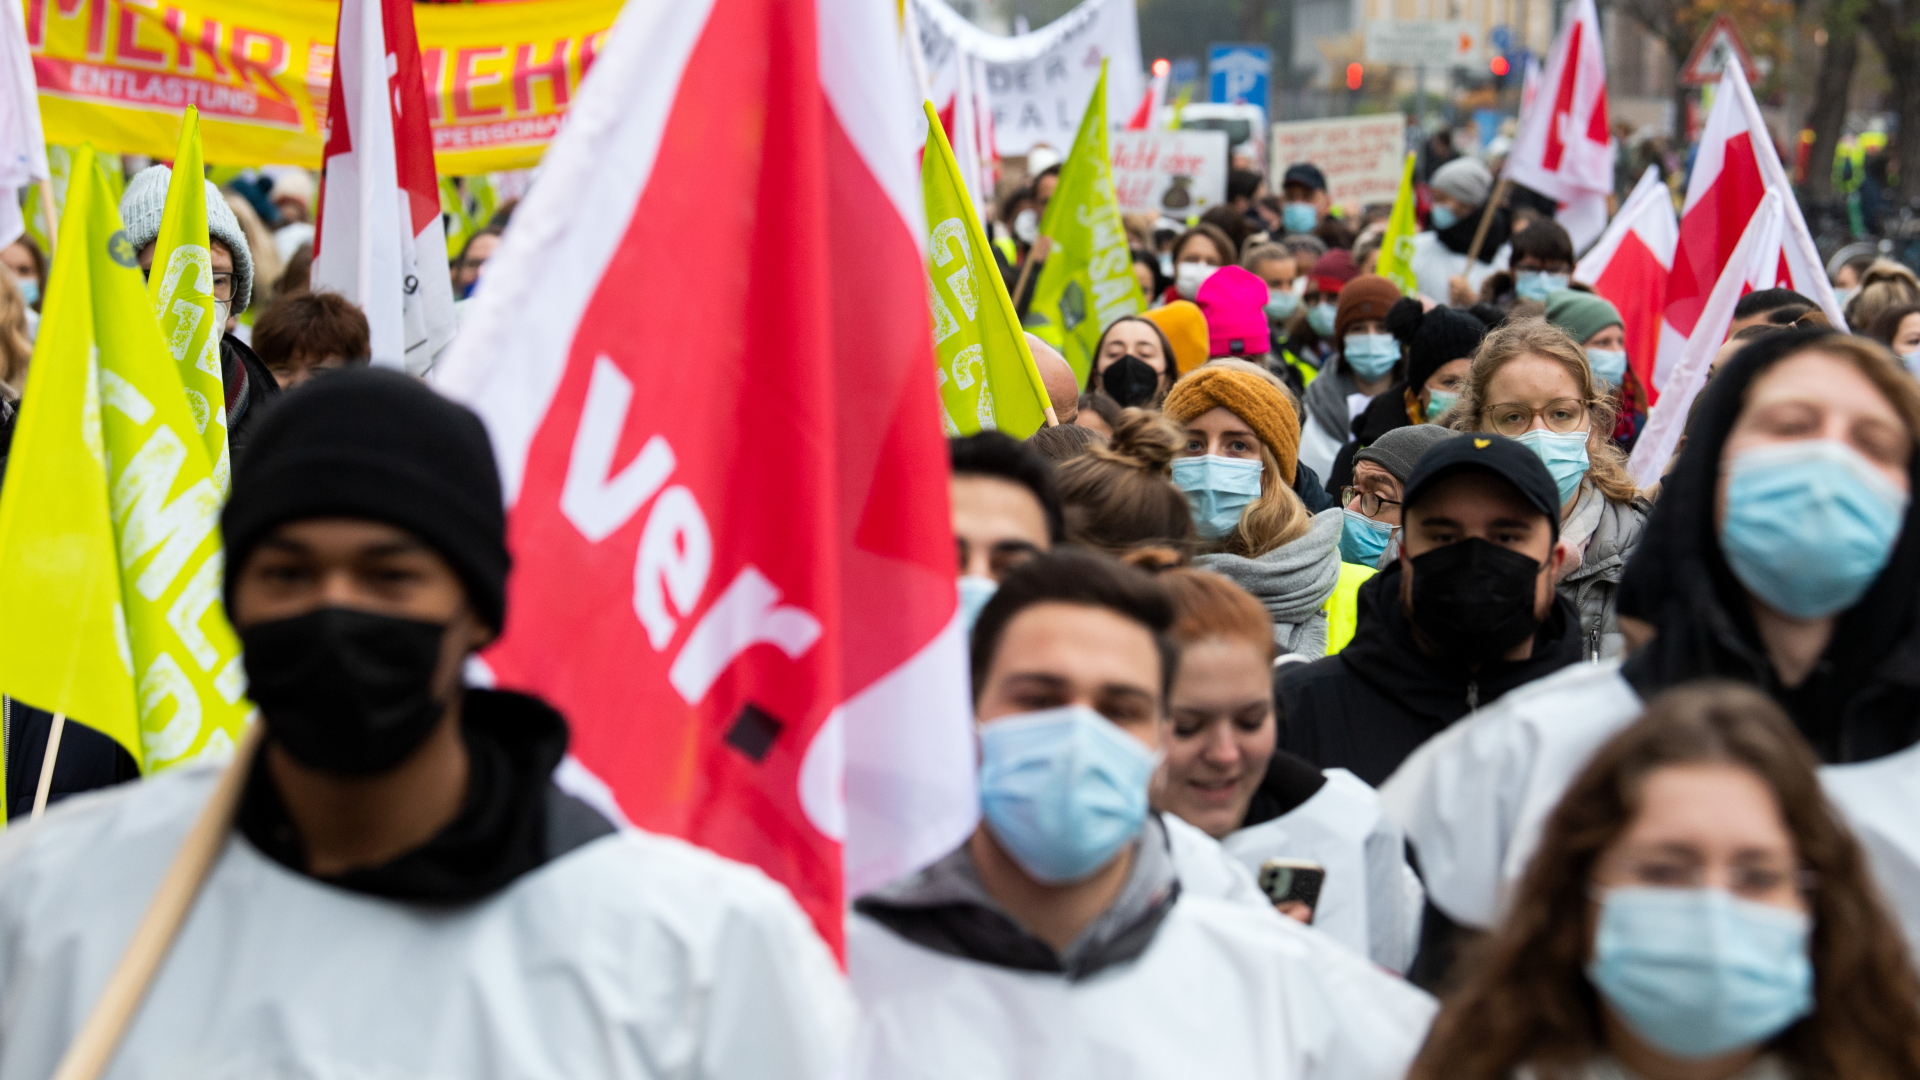 Beschäftigte der Universitätsklinik in Köln ziehen in einem Demonstrationszug durch die Stadt und streiken. | dpa